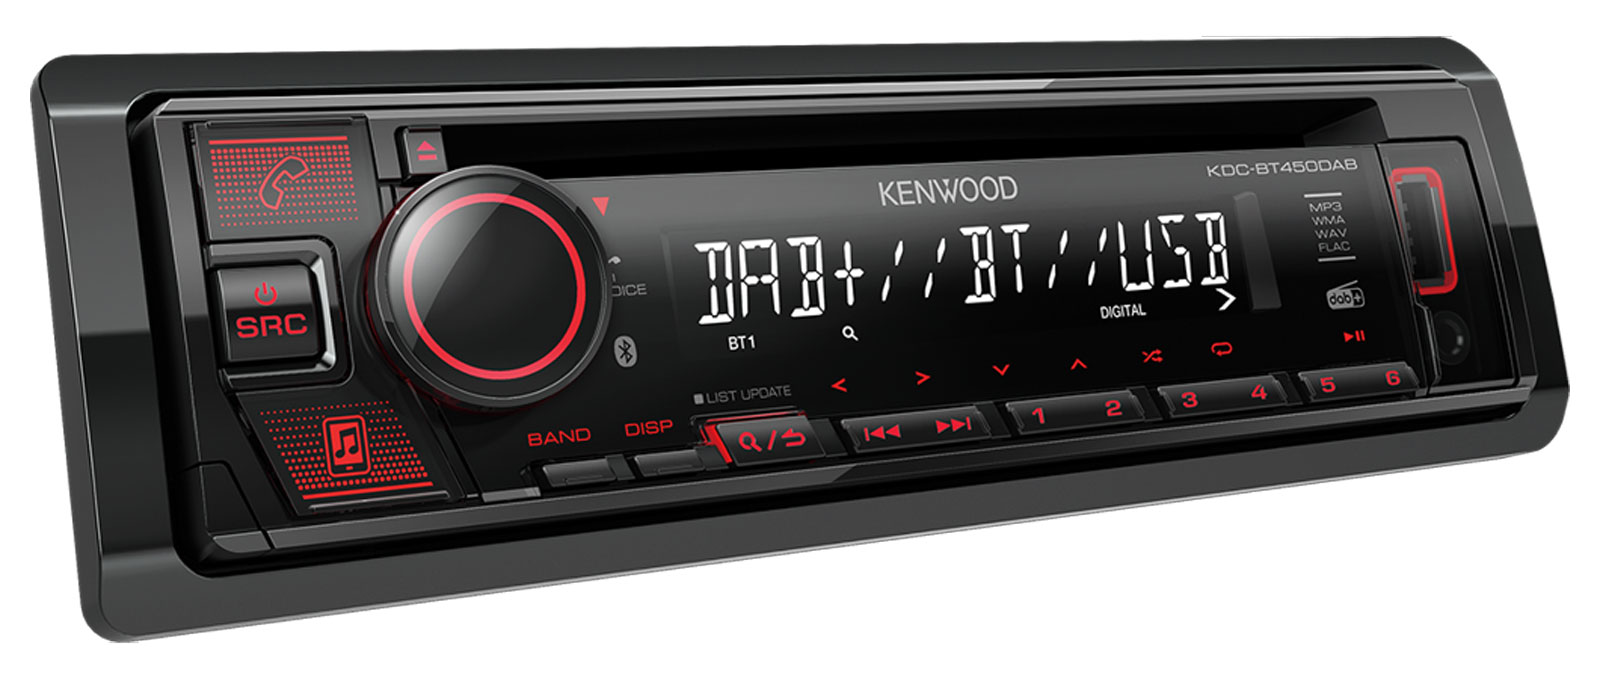 Kenwood KDC-BT450DAB - Autoradios 